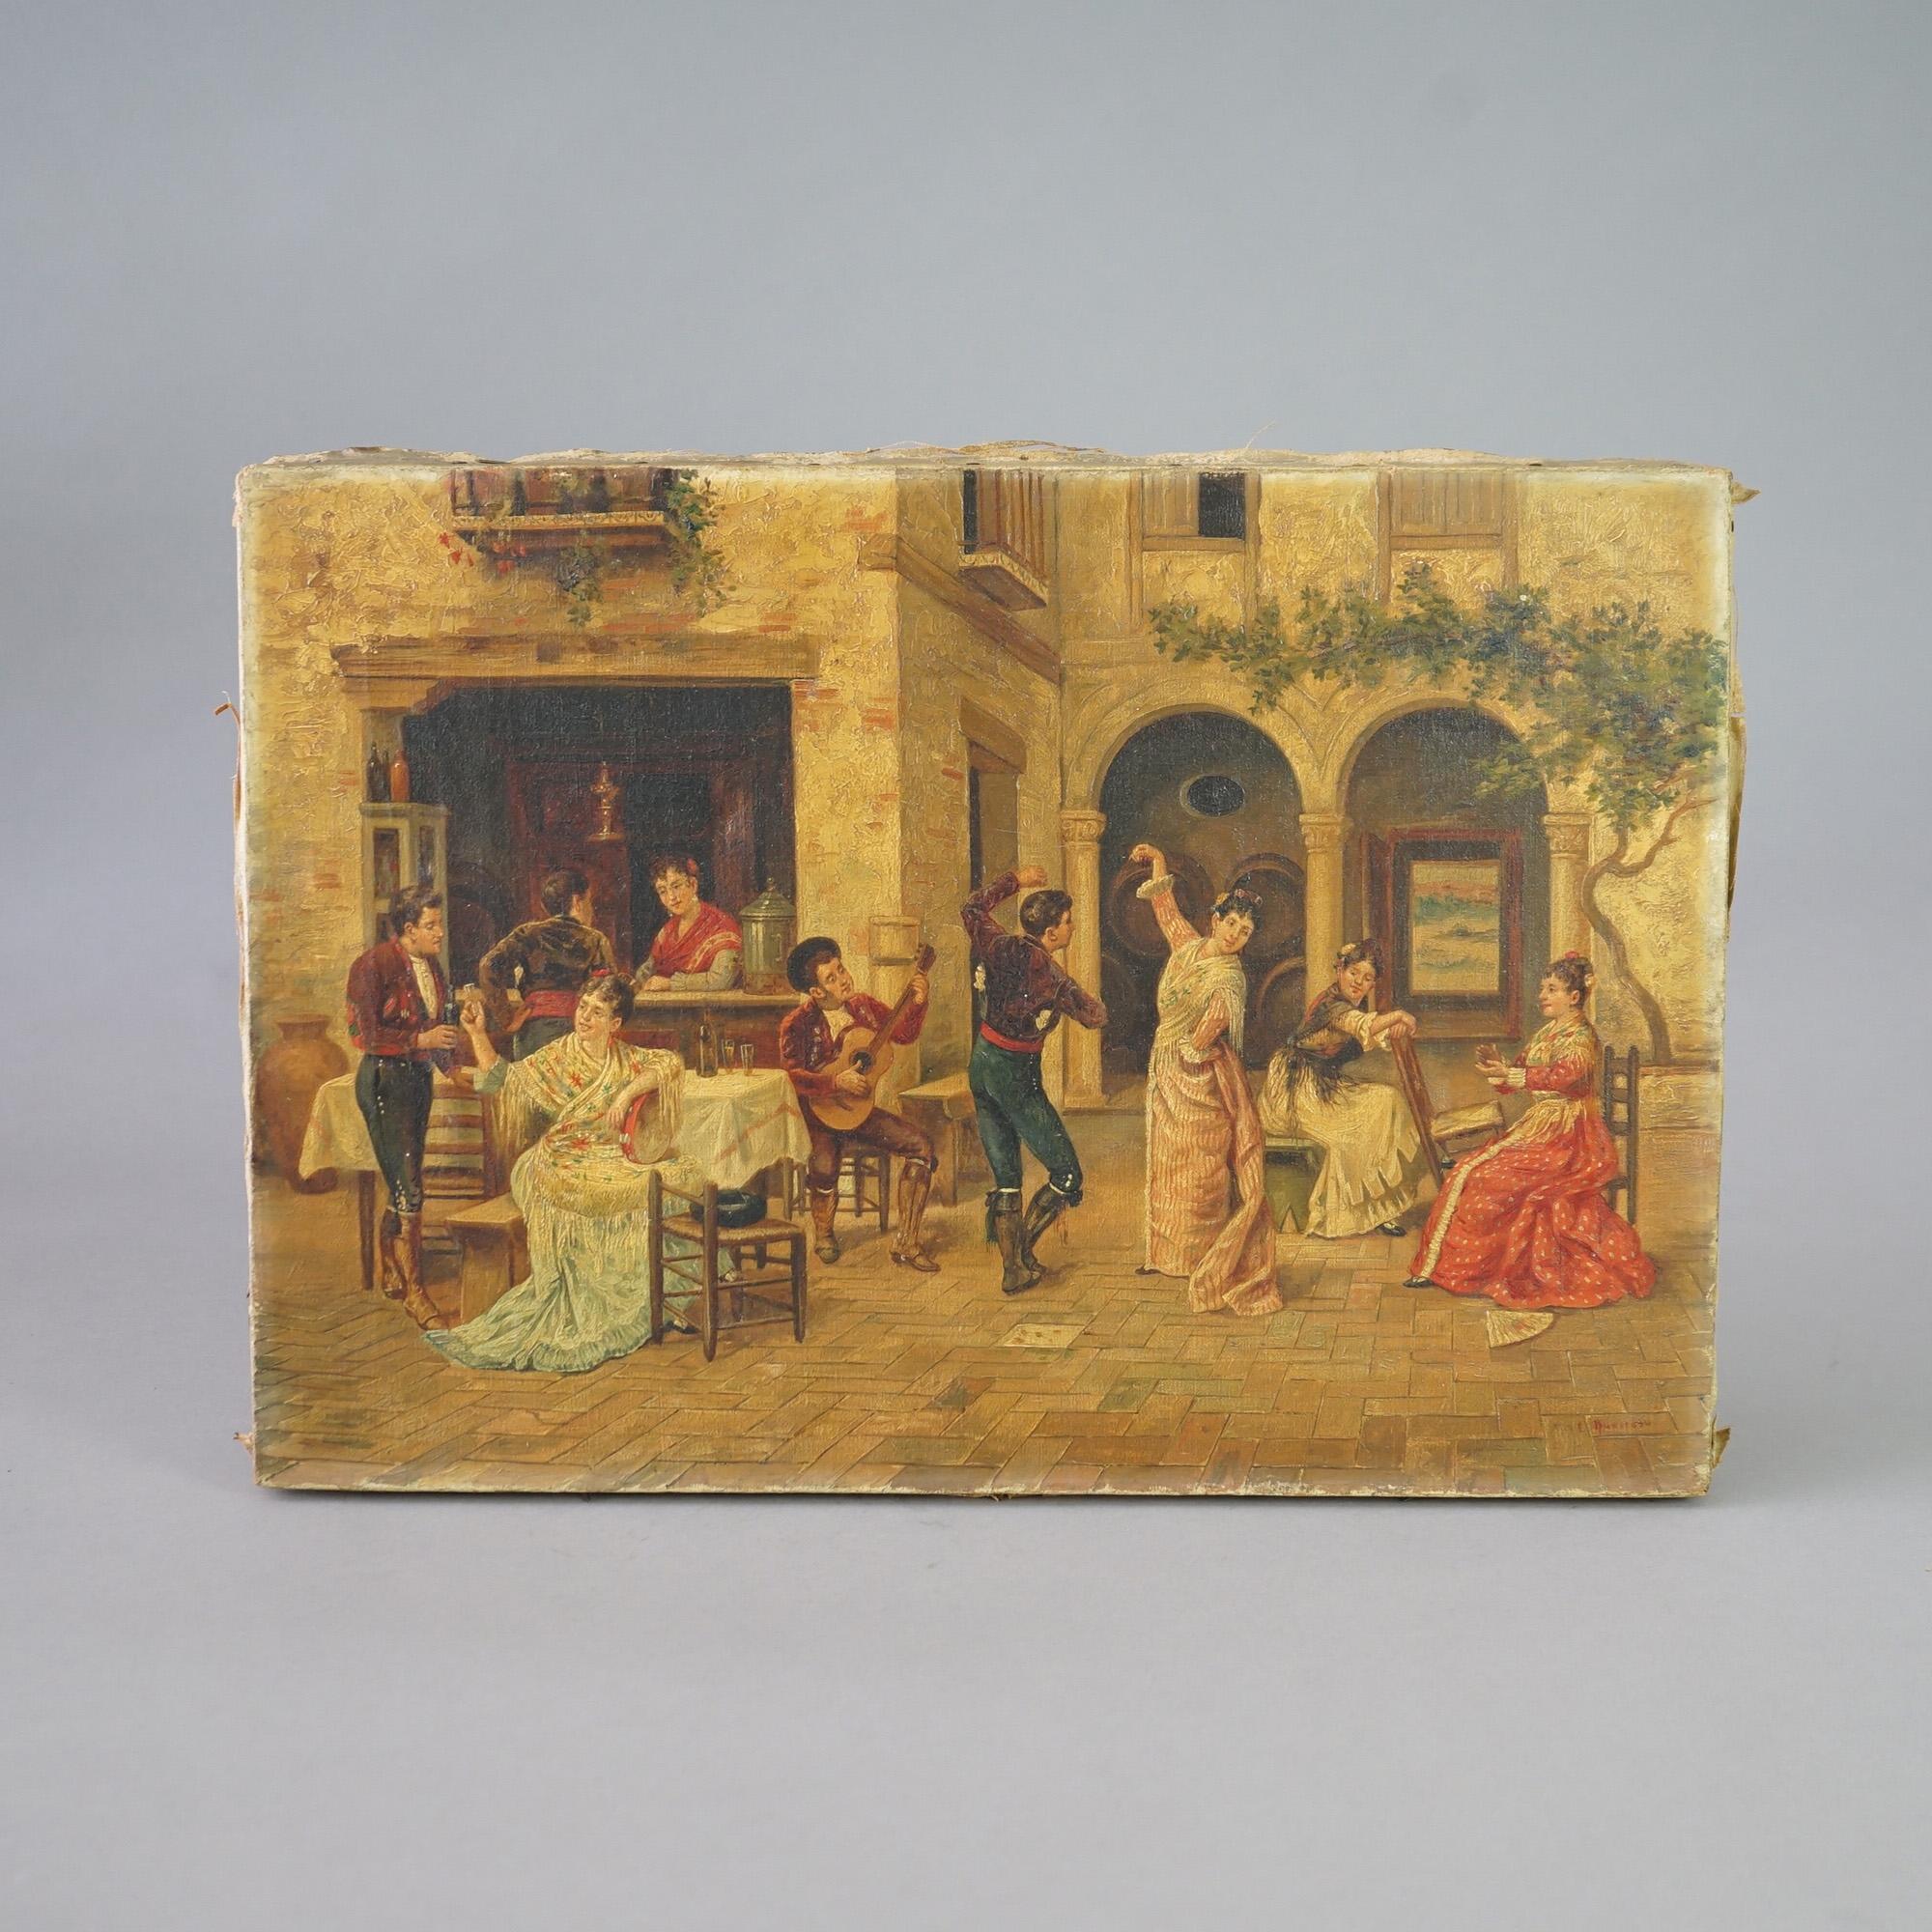 Tableau ancien offre Huile sur toile Scène de genre espagnole avec des personnages dansant dans une cour, vers 1920

Mesures - 14,5 